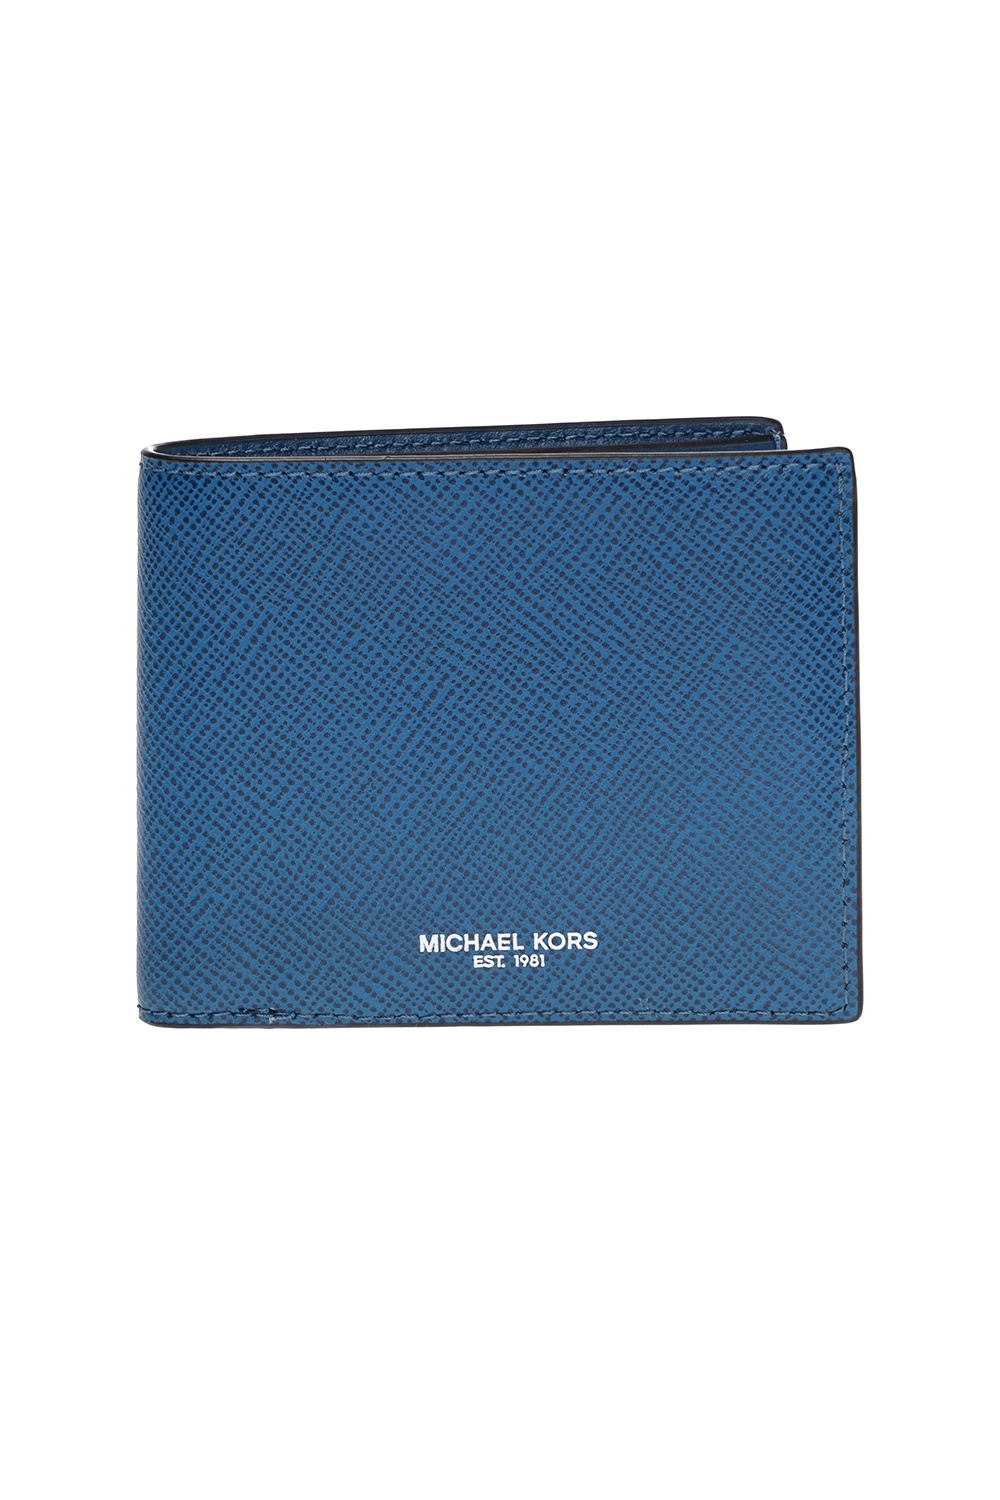 Michael Michael Kors Bi-fold wallet | Men's | Vitkac